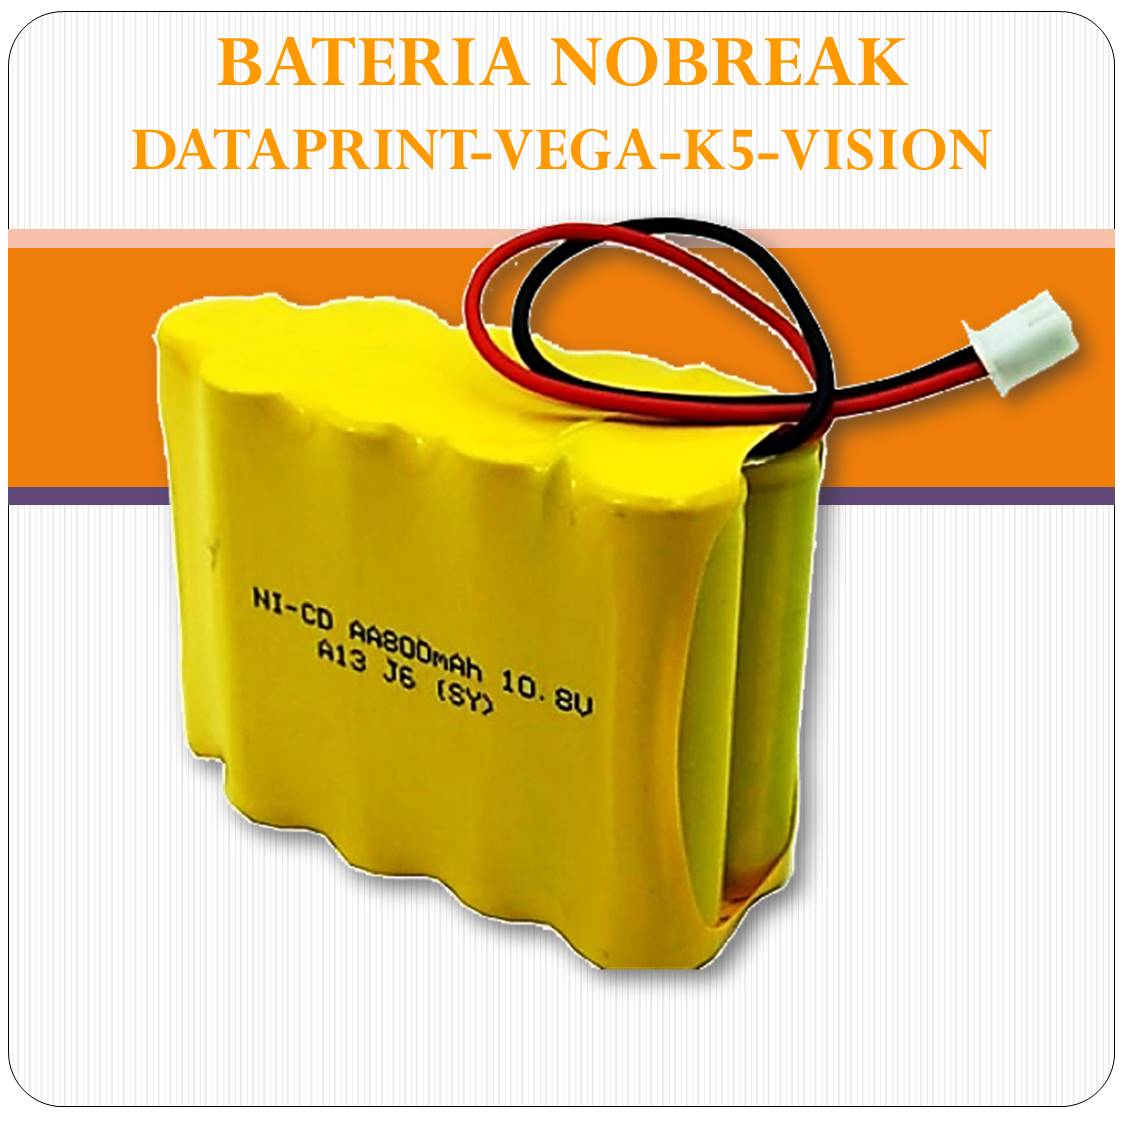 Bateria Nobreak Dataprint - Vega - VIsion - K5